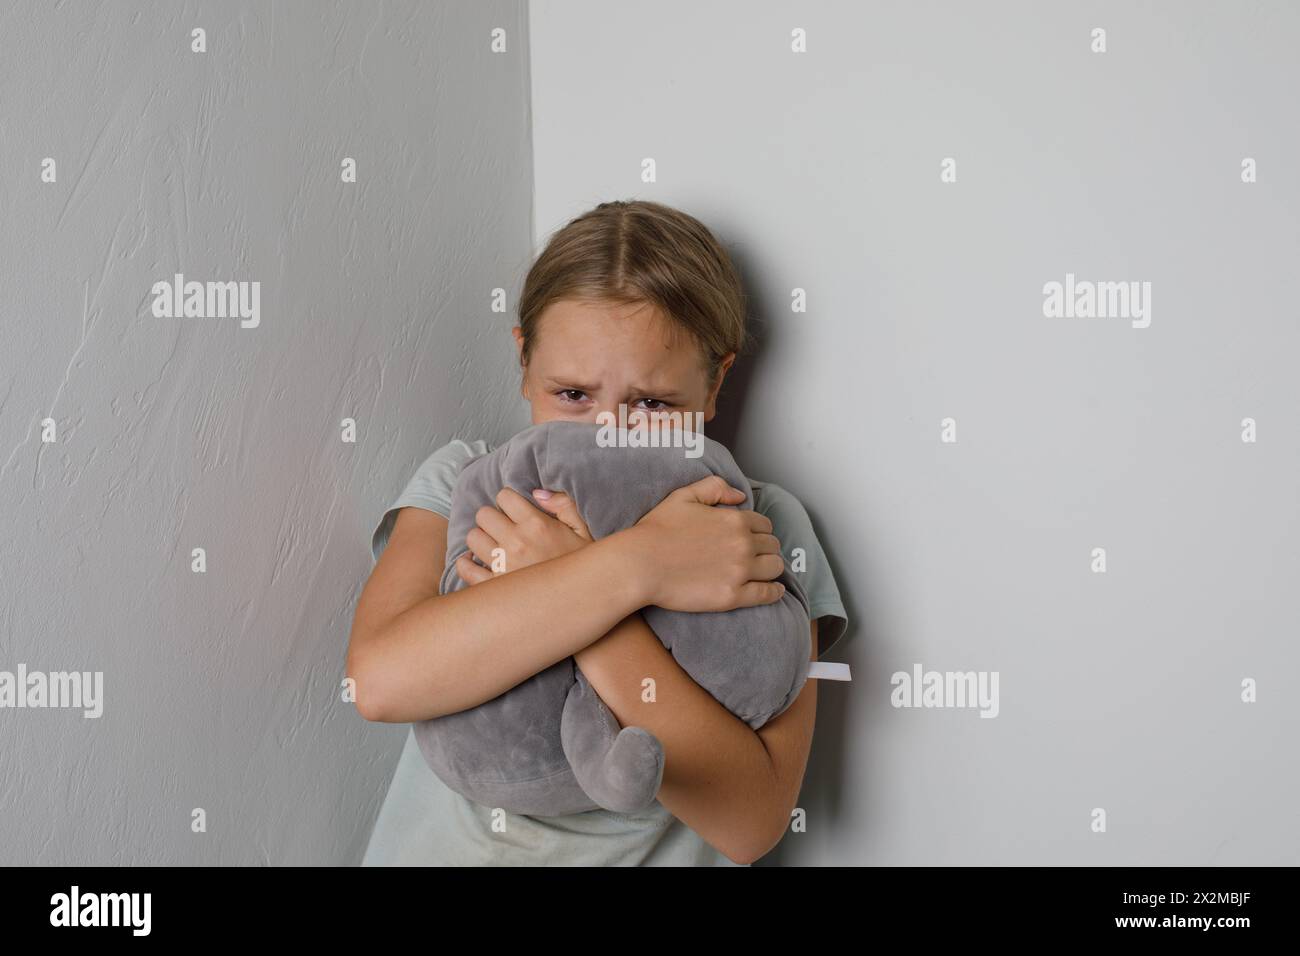 Sad young girl crying and looking at camera at home Stock Photo